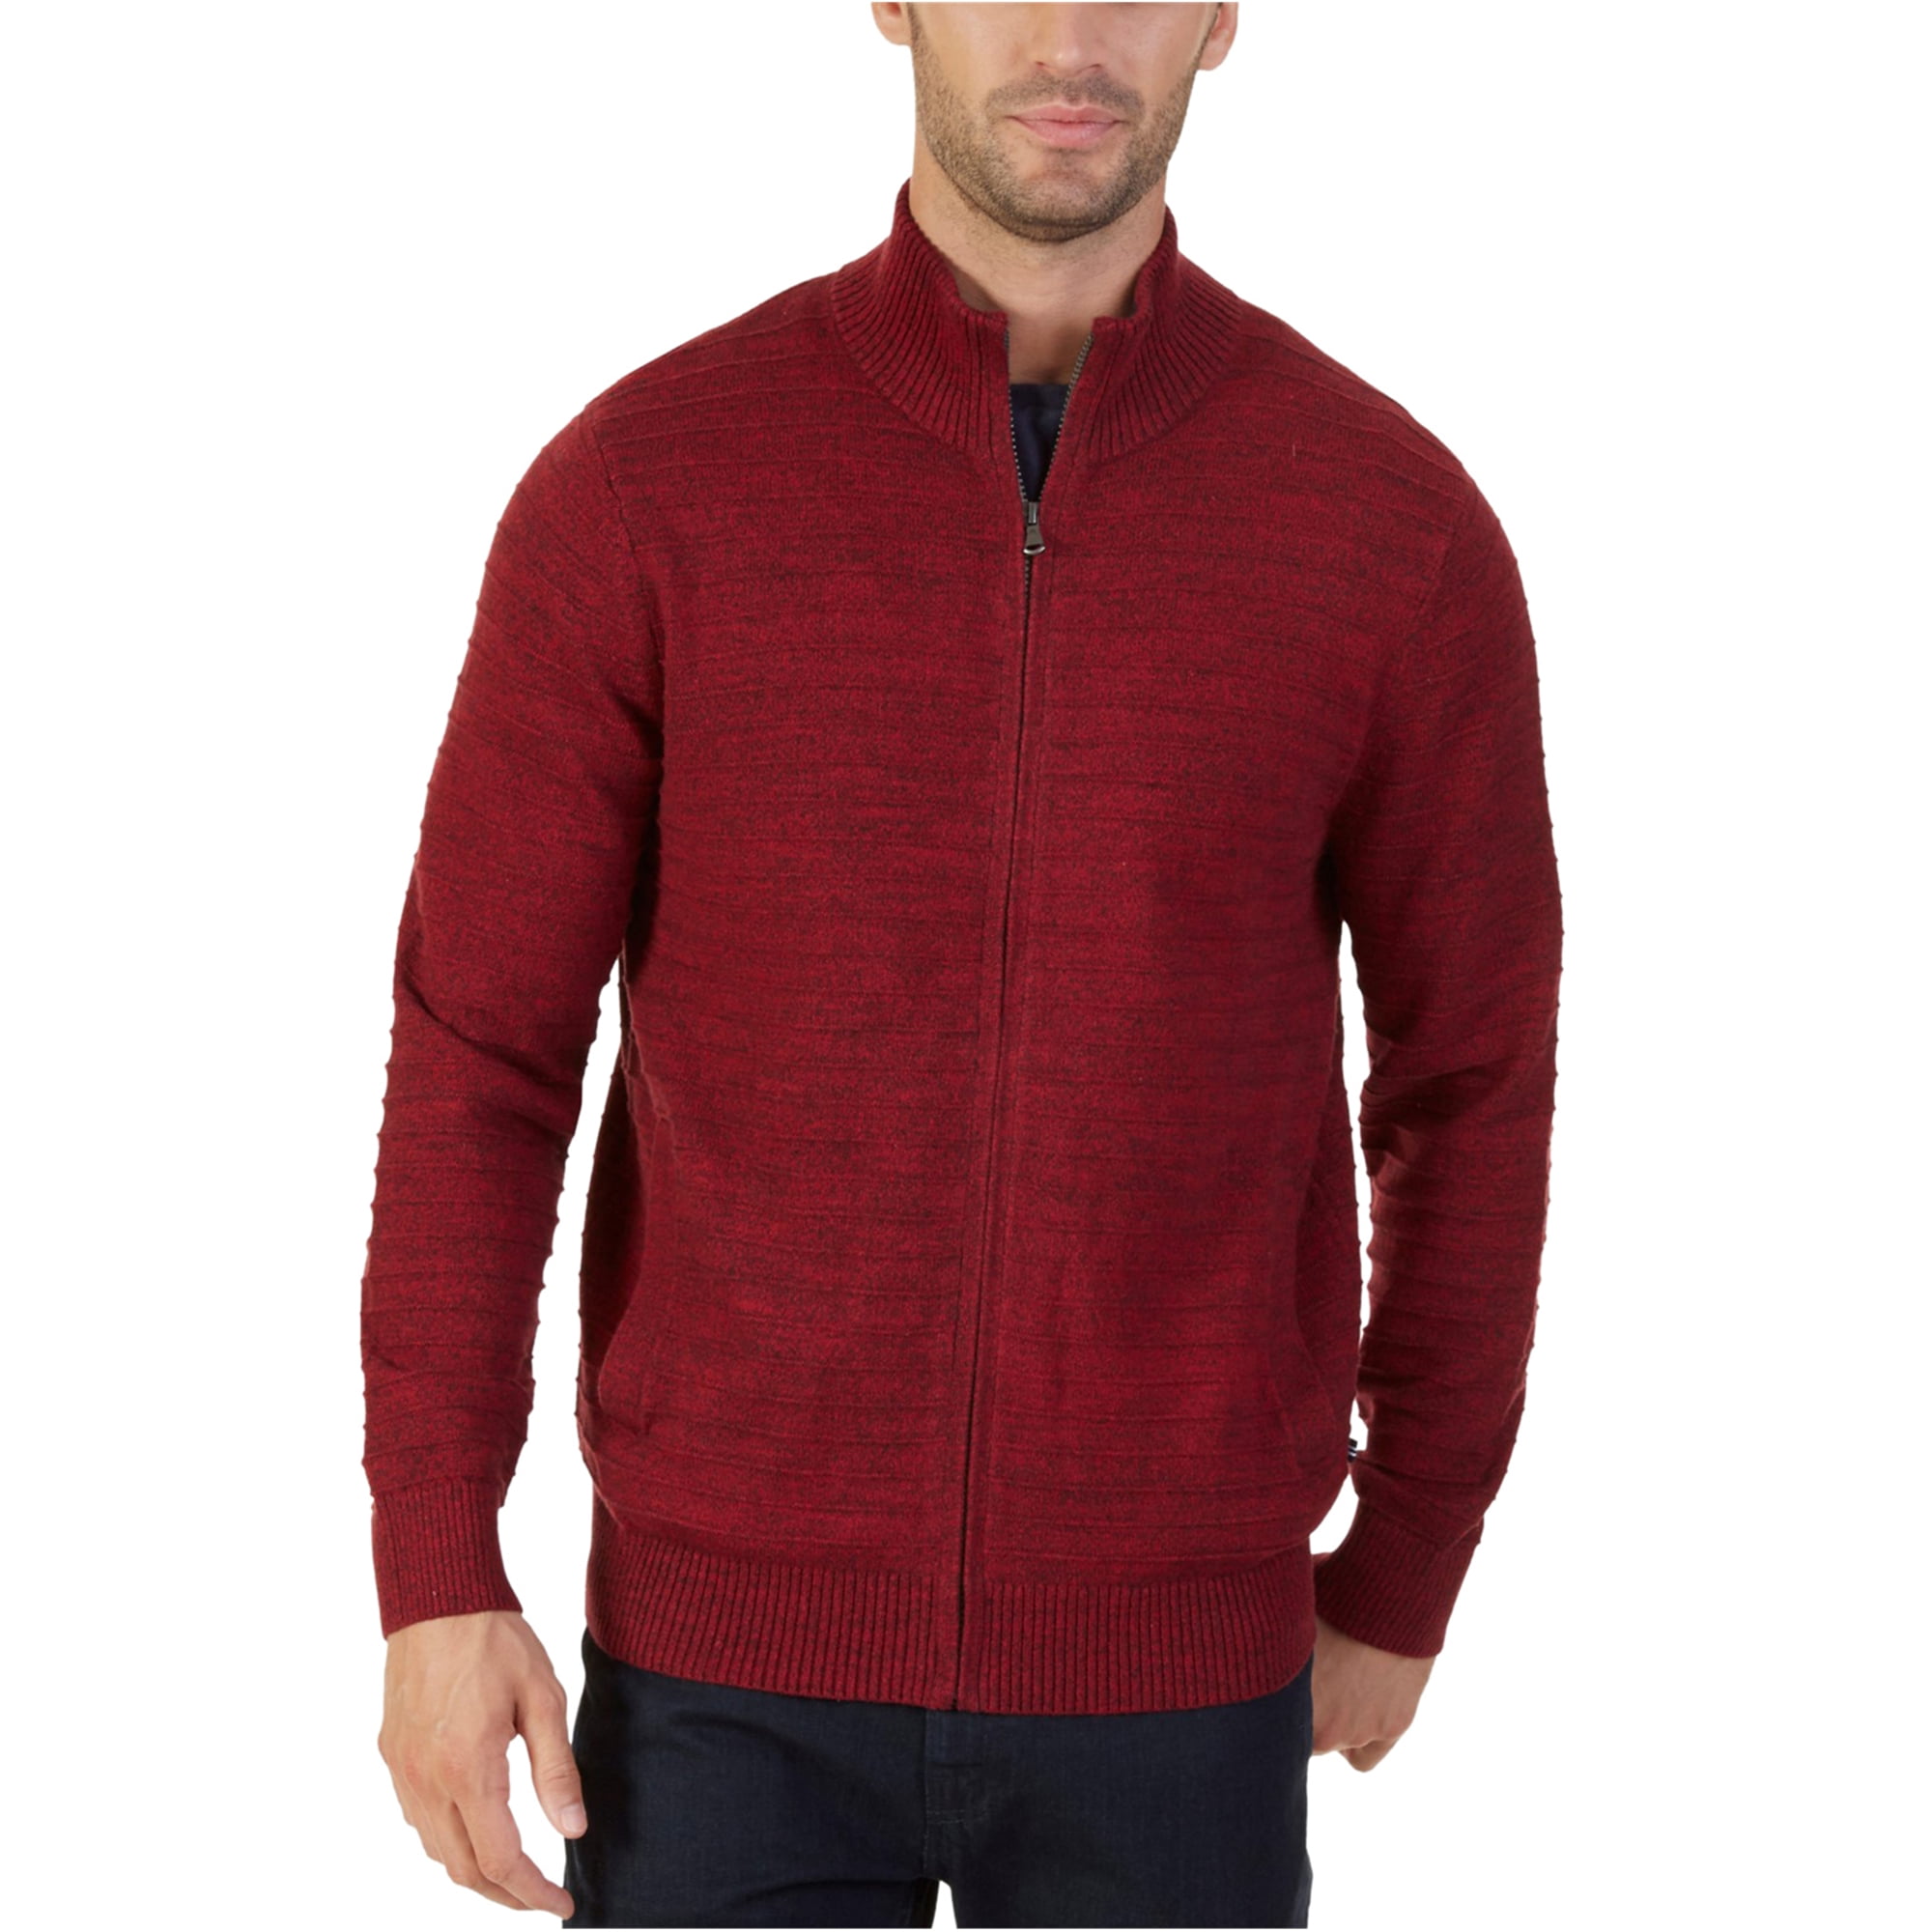 Nautica Mens Knit Cardigan Sweater, Red, Small - Walmart.com